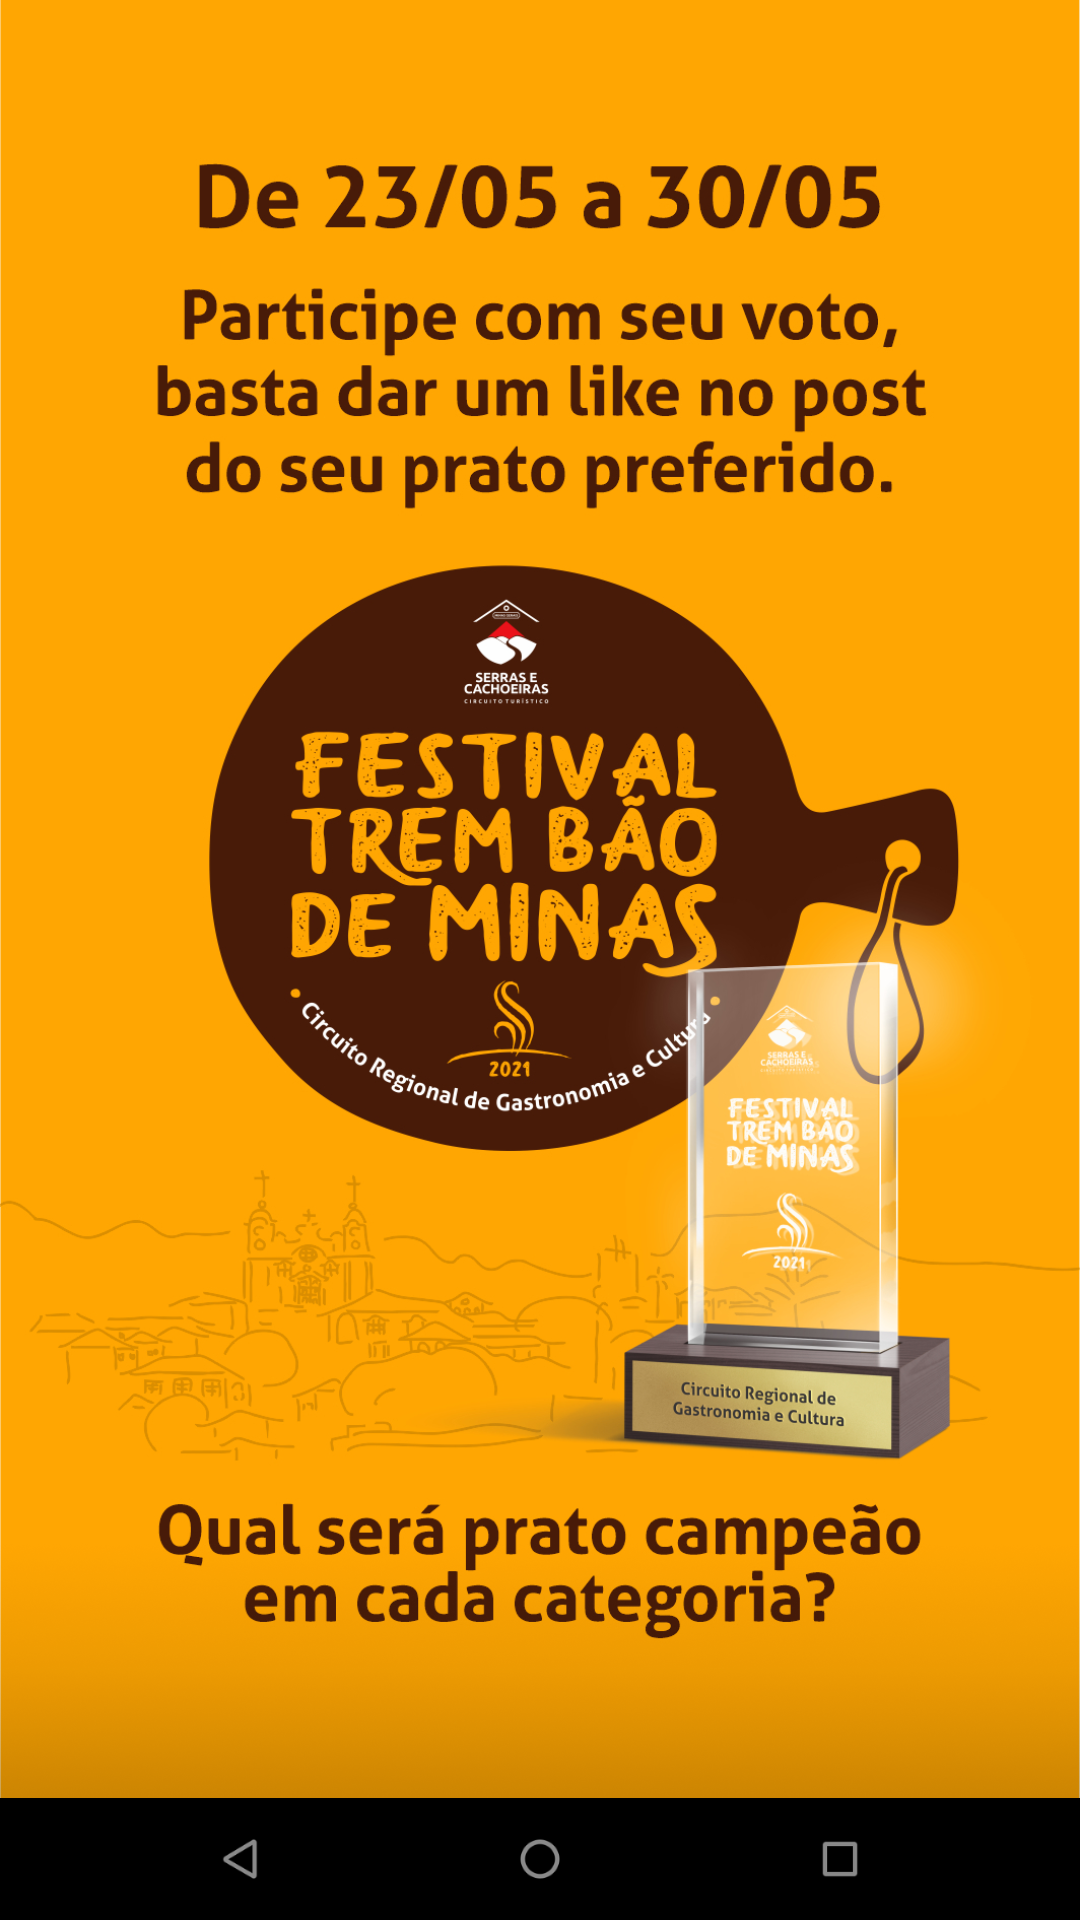 Final do festival gastronômico Trem Bão de Minas